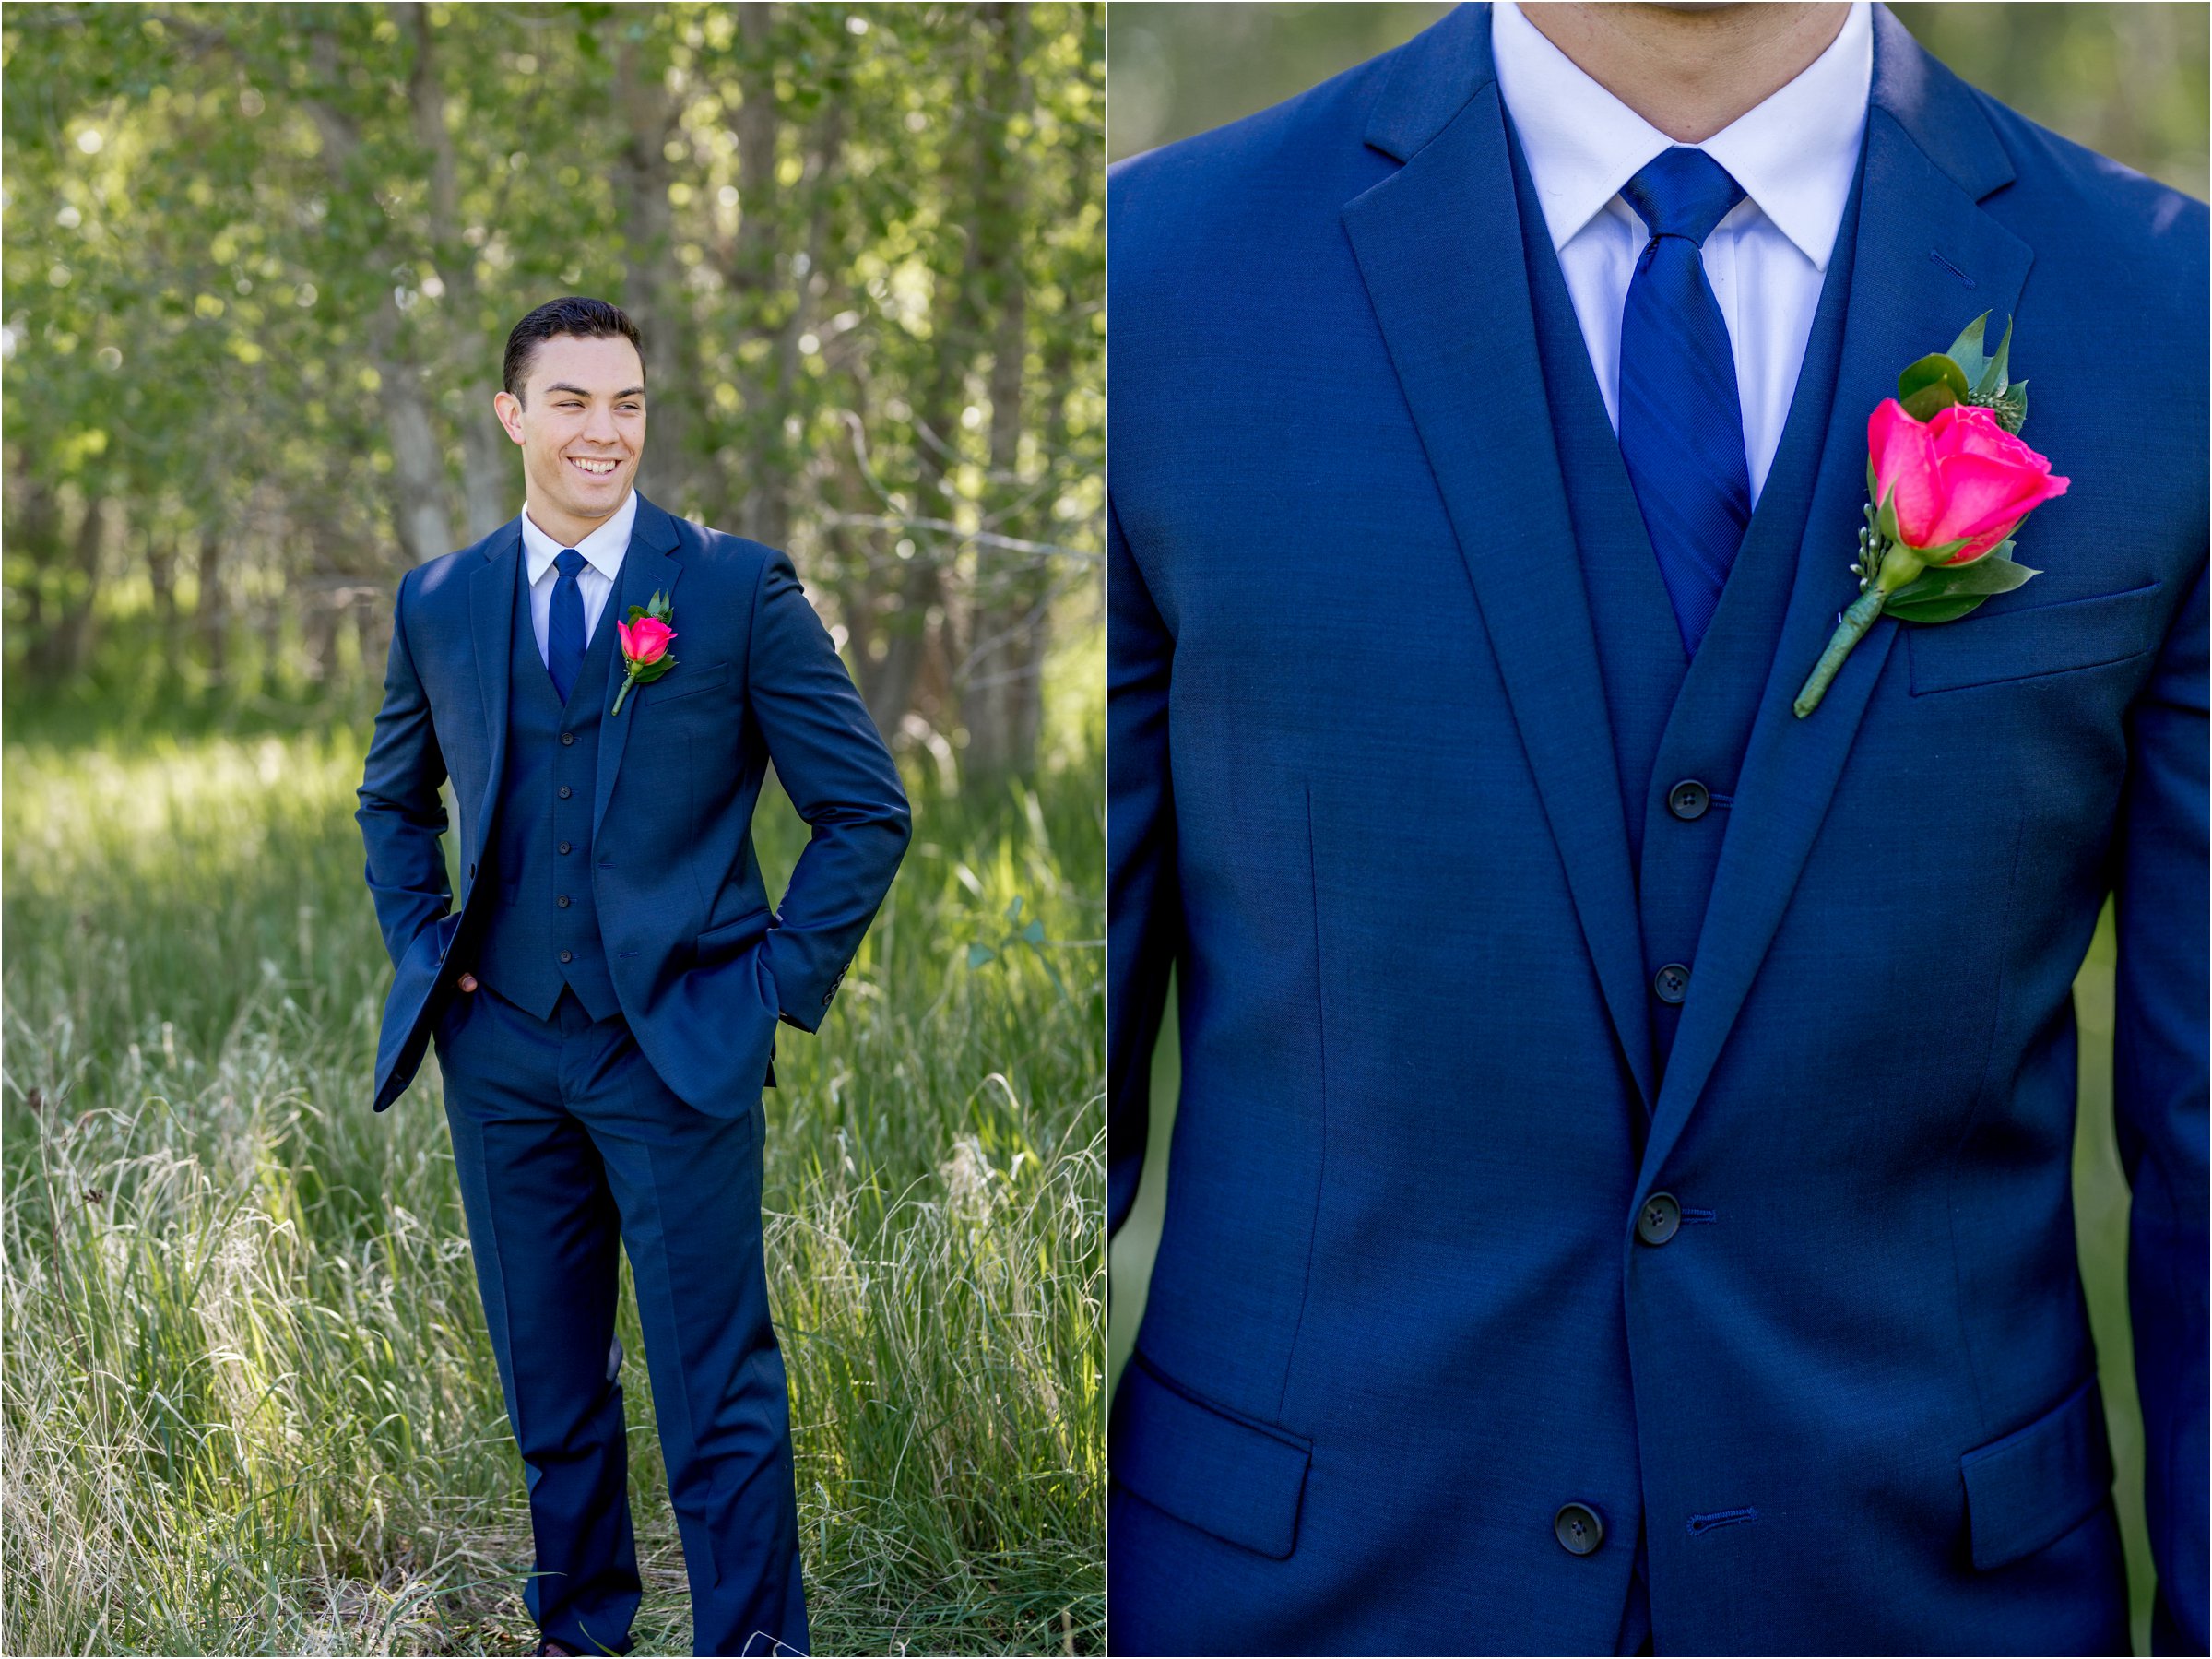 Greeley, Colrado Wedding by Northern Colorado Wedding Photographer